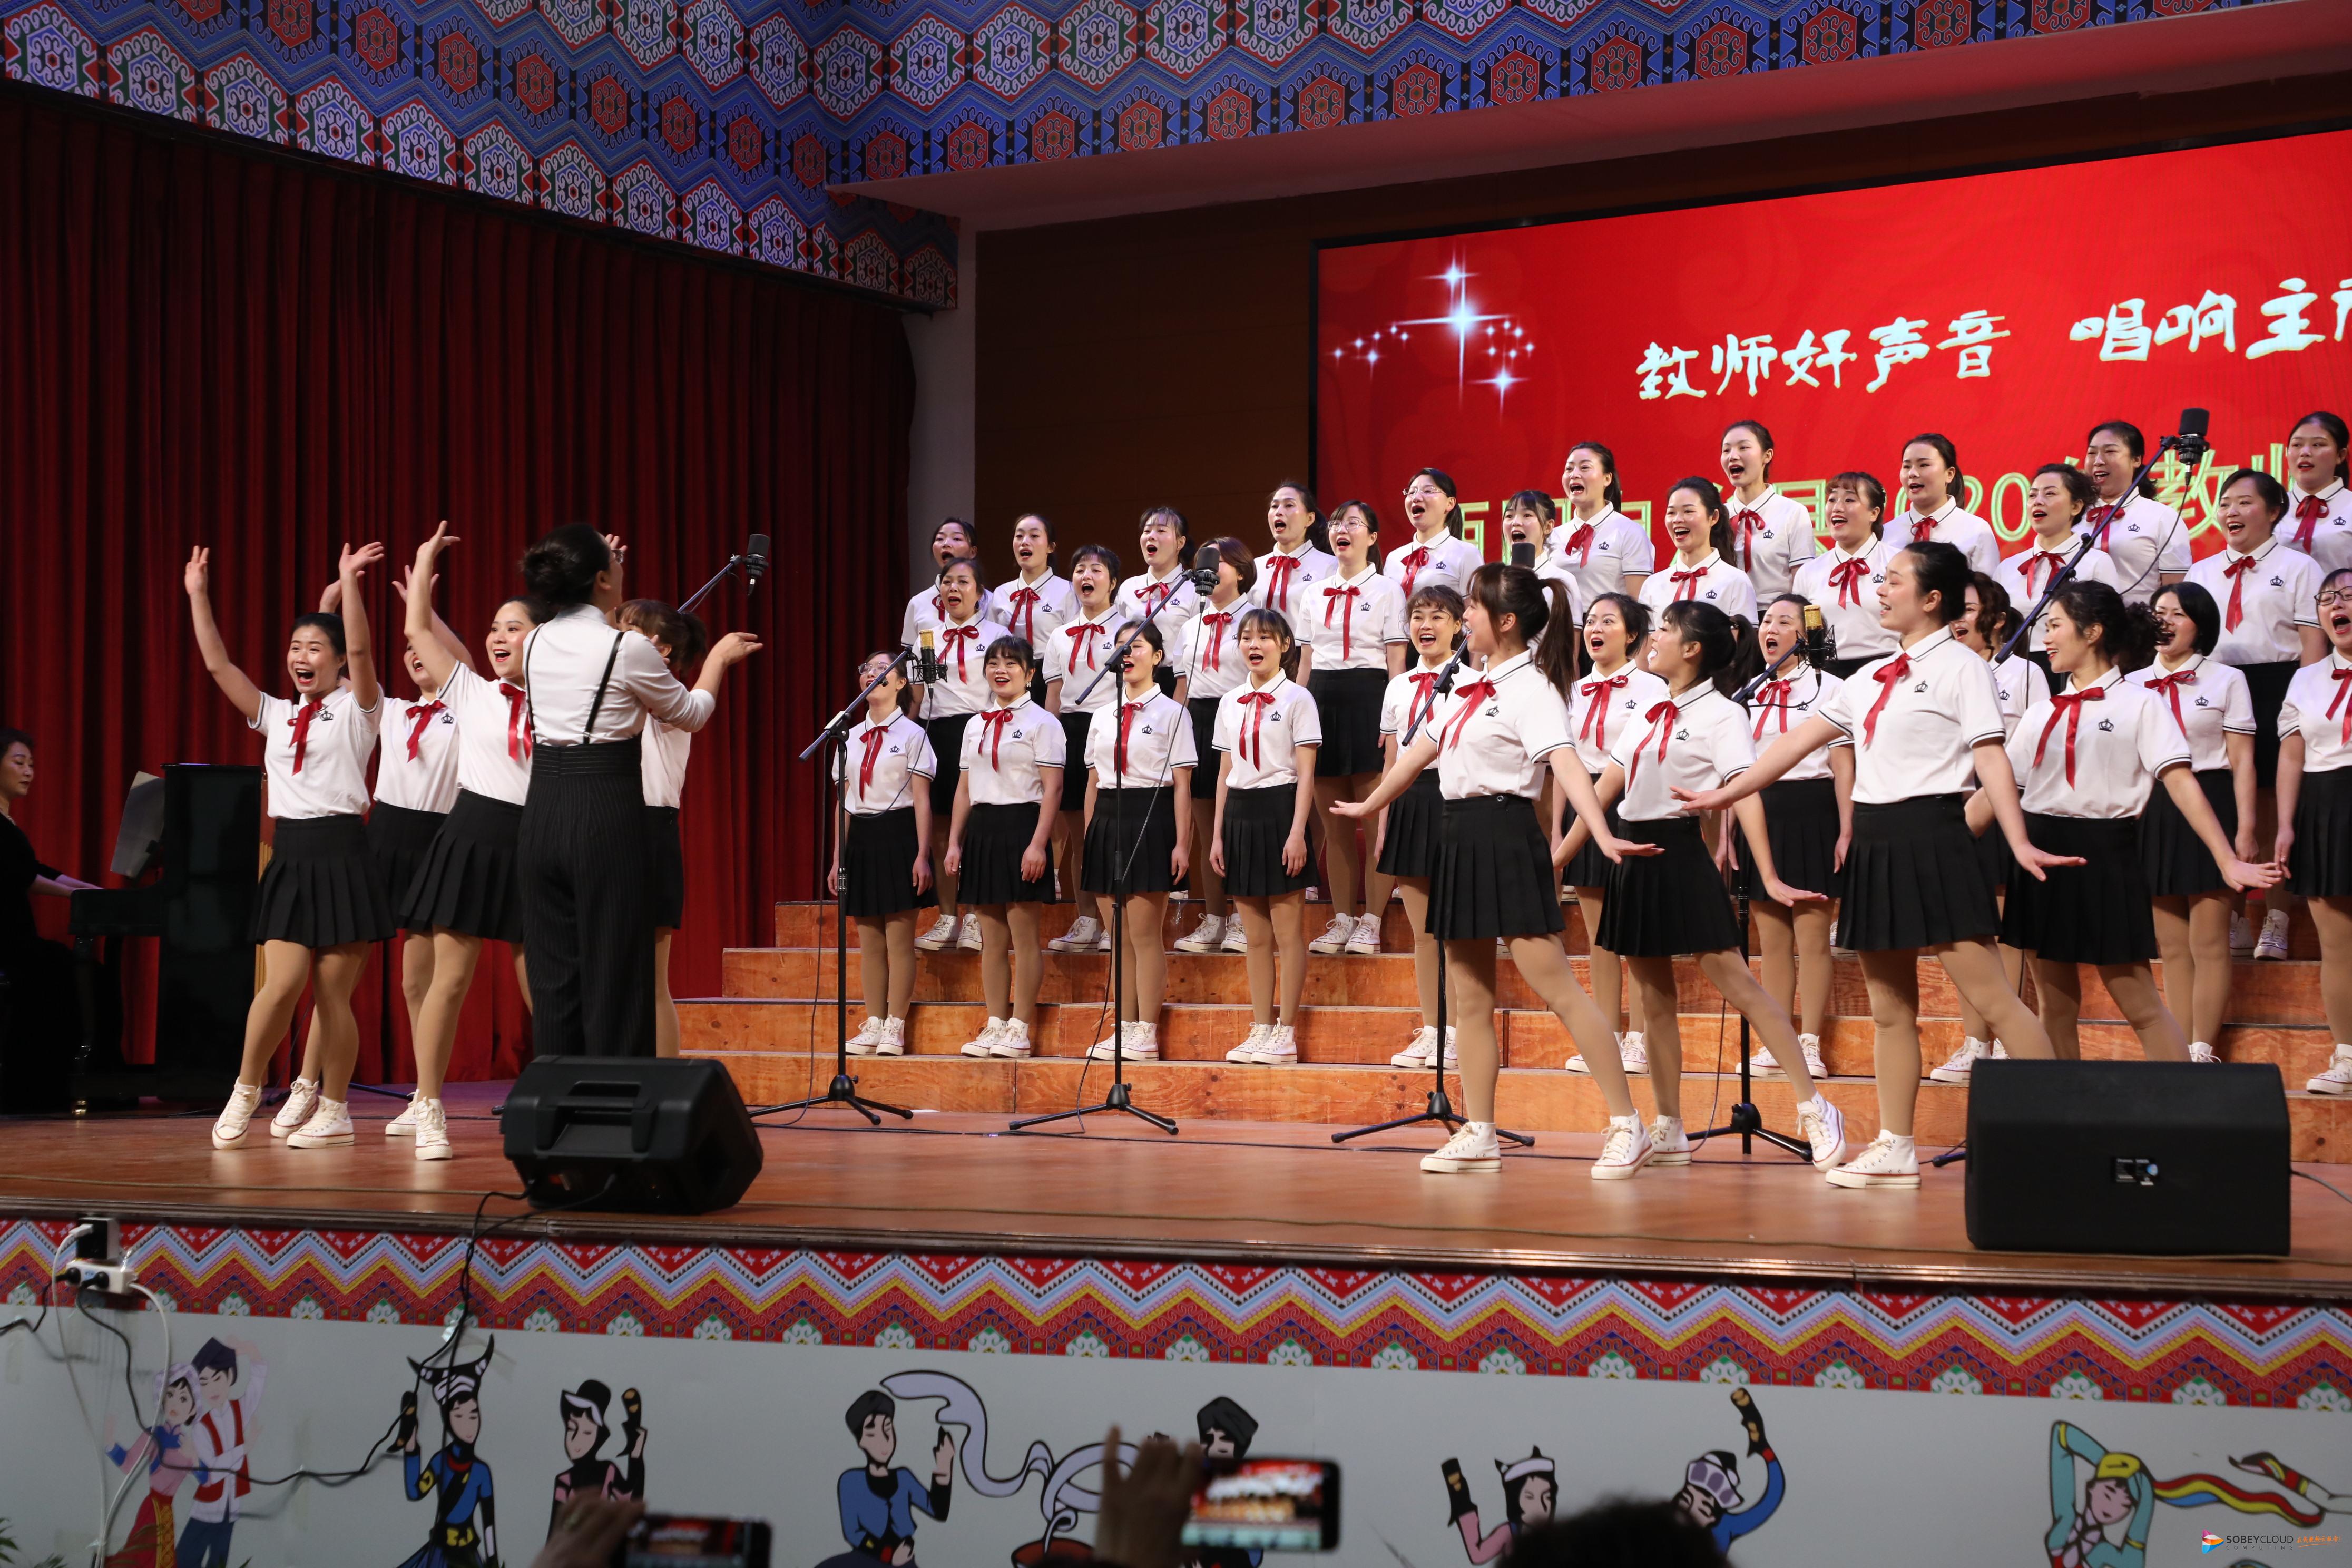 酉阳县举行2020年教师合唱大赛展示教师风采